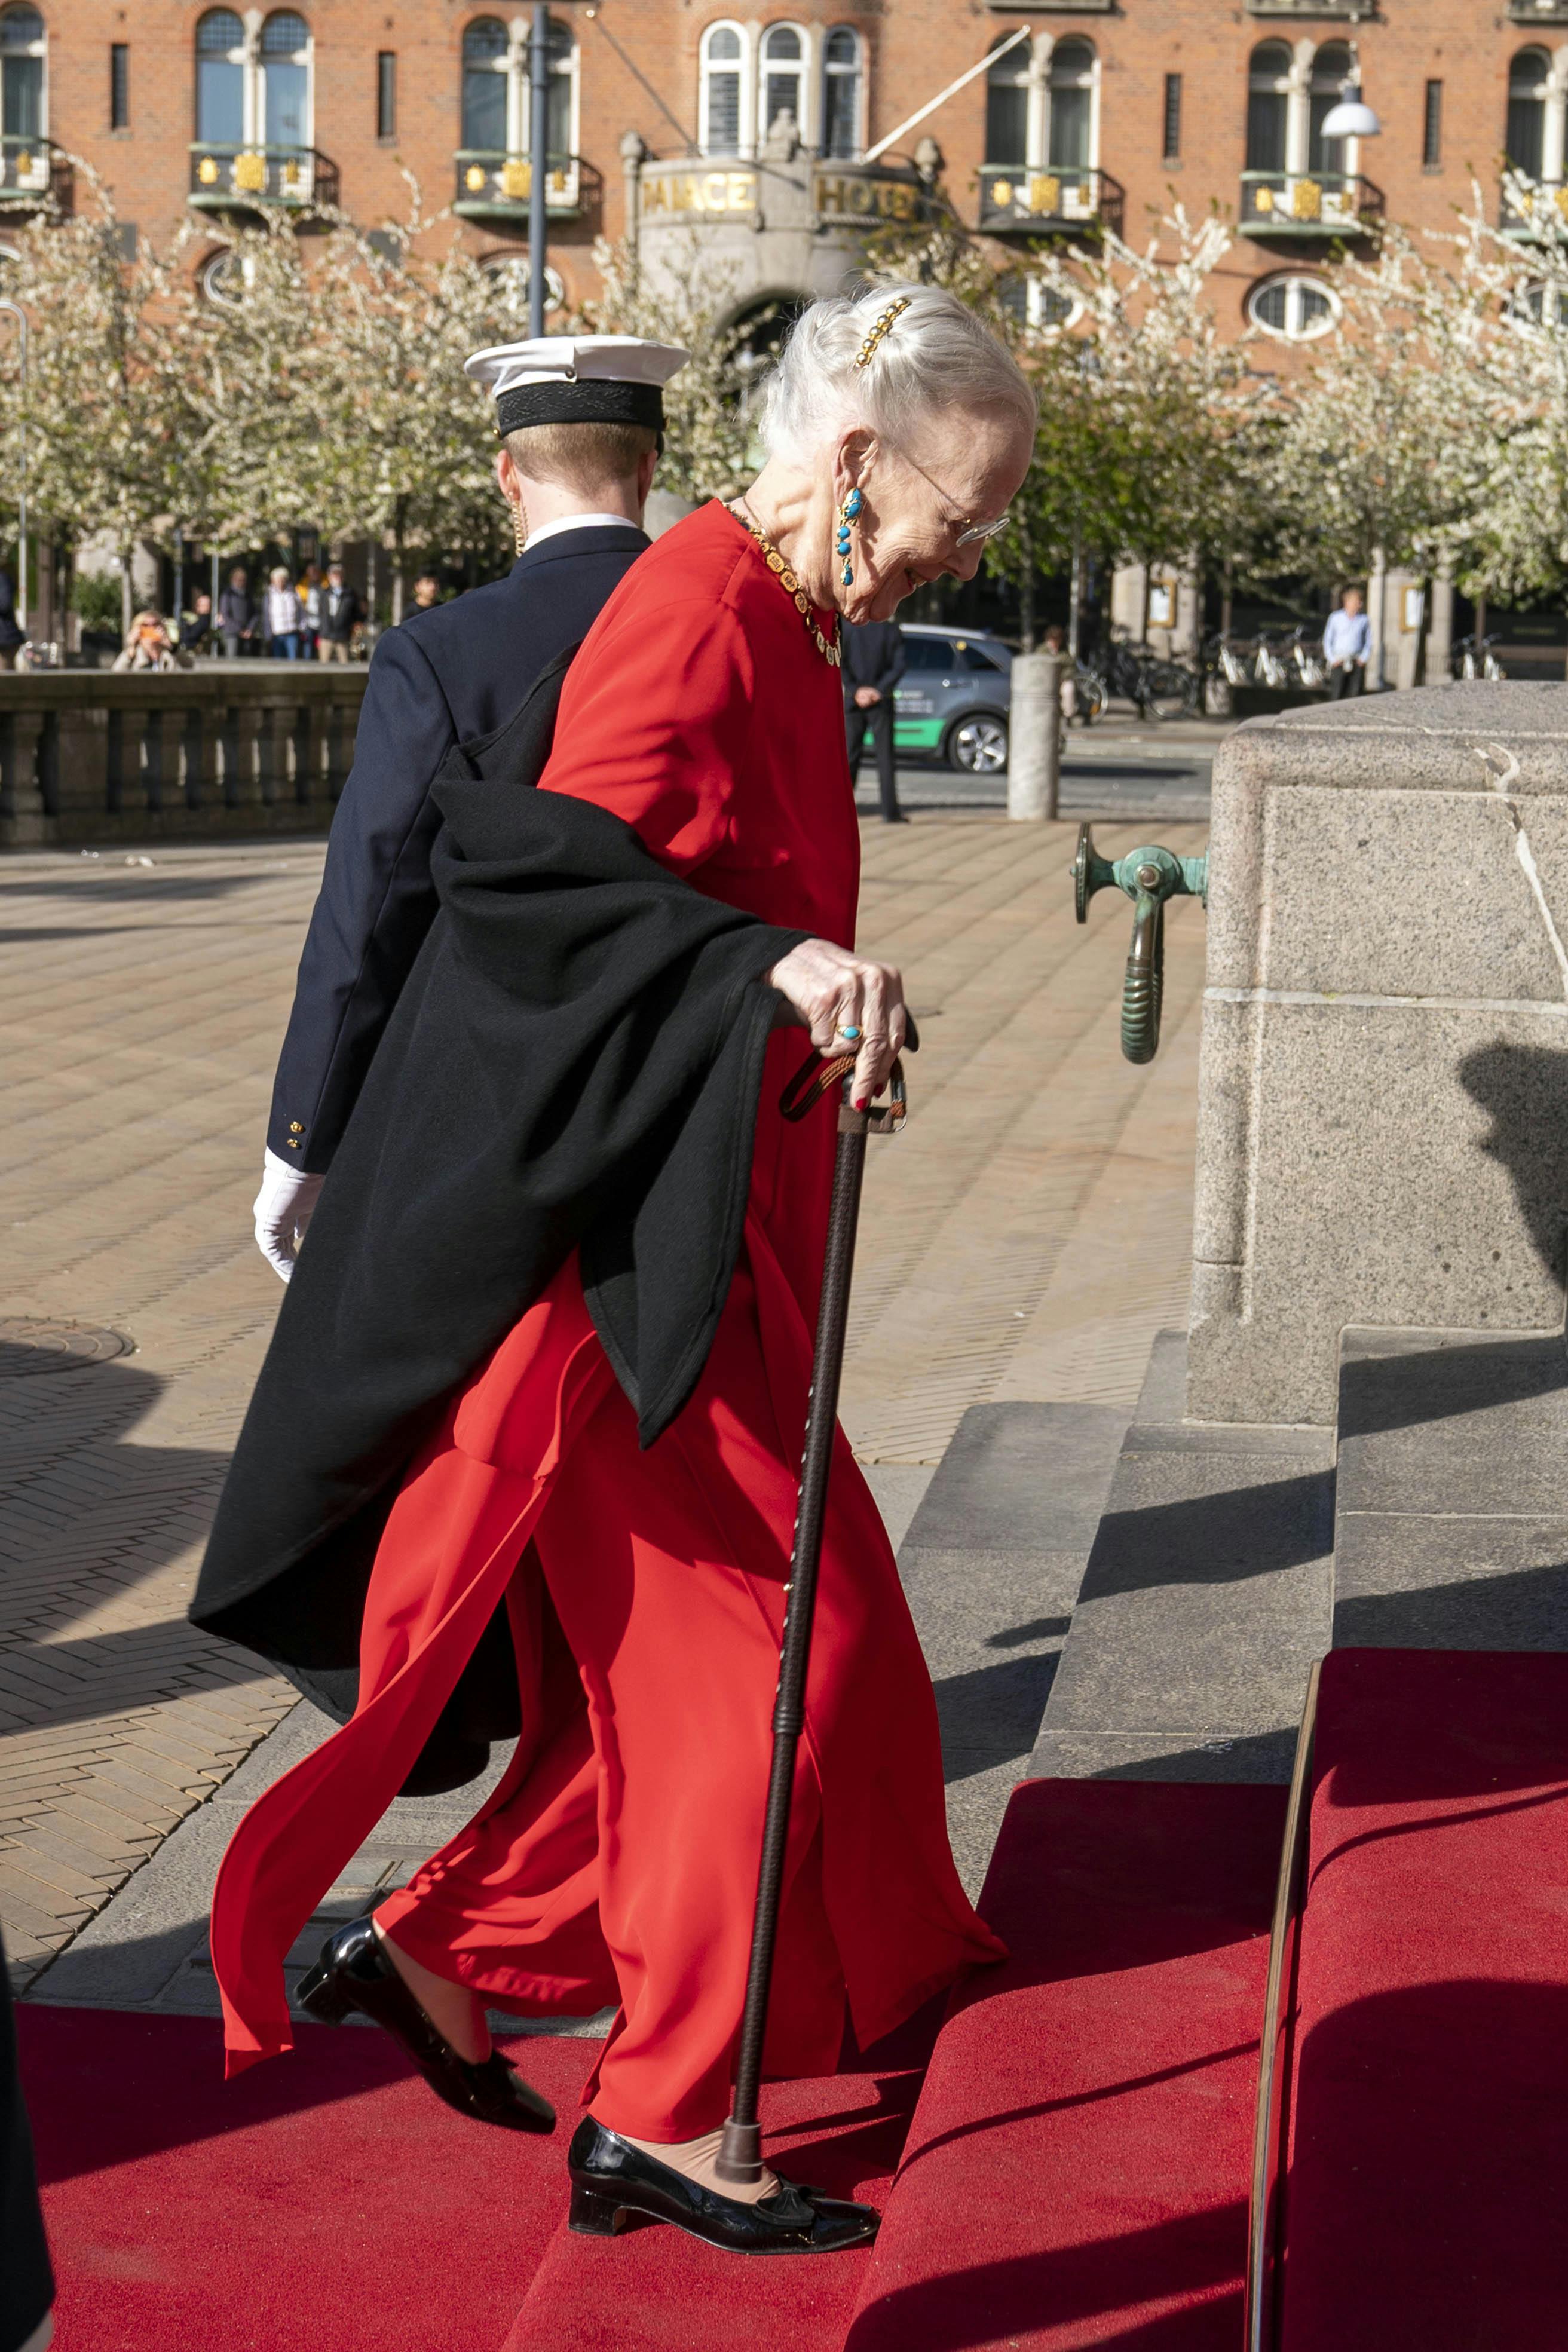 Dronning Margrethe med stok